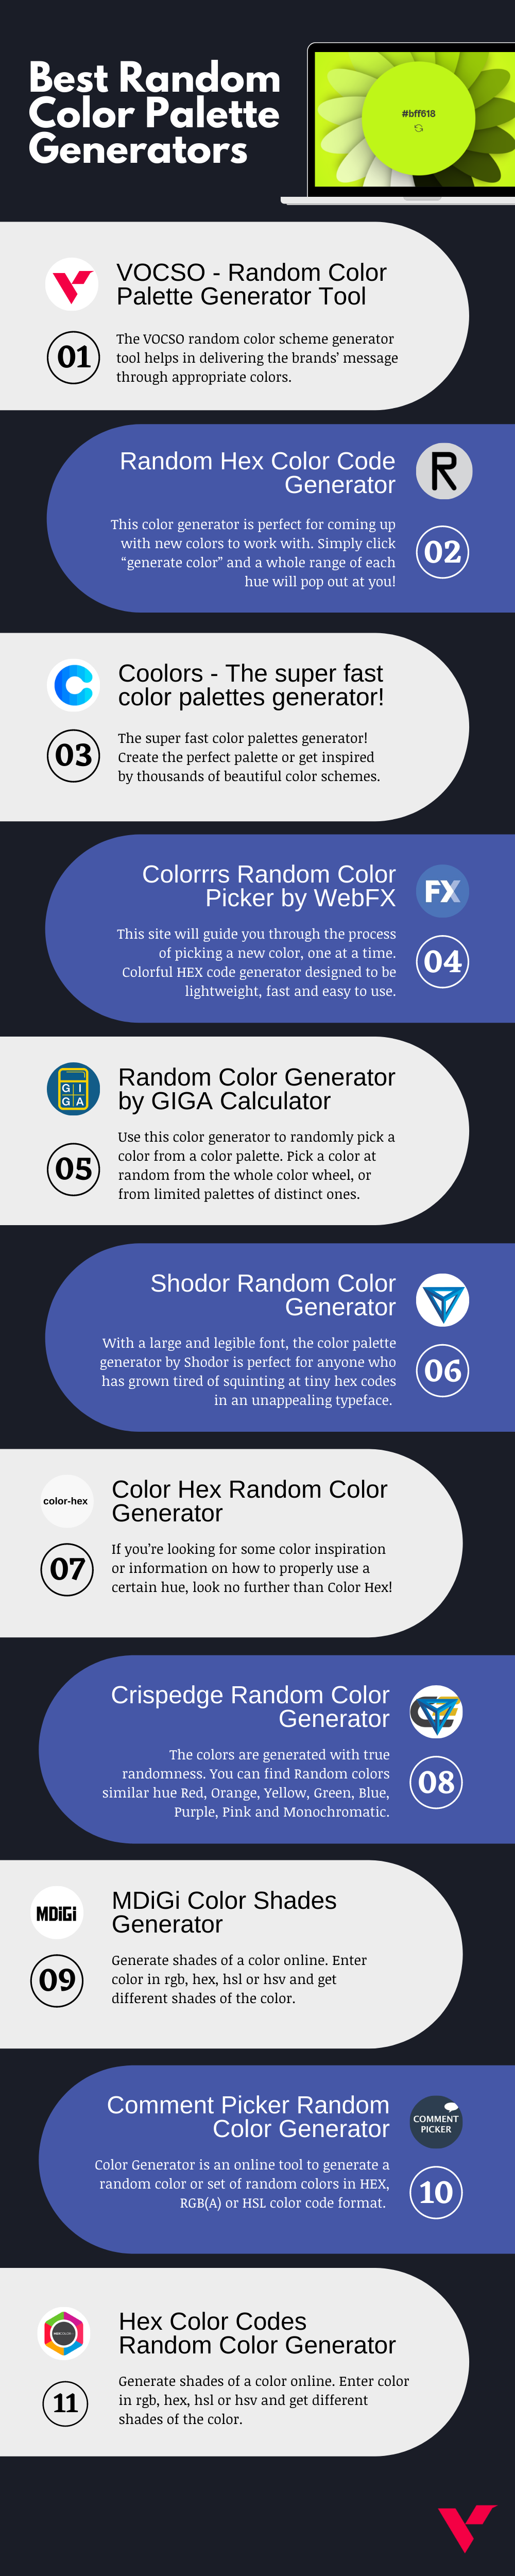 Random Color Palette Generators